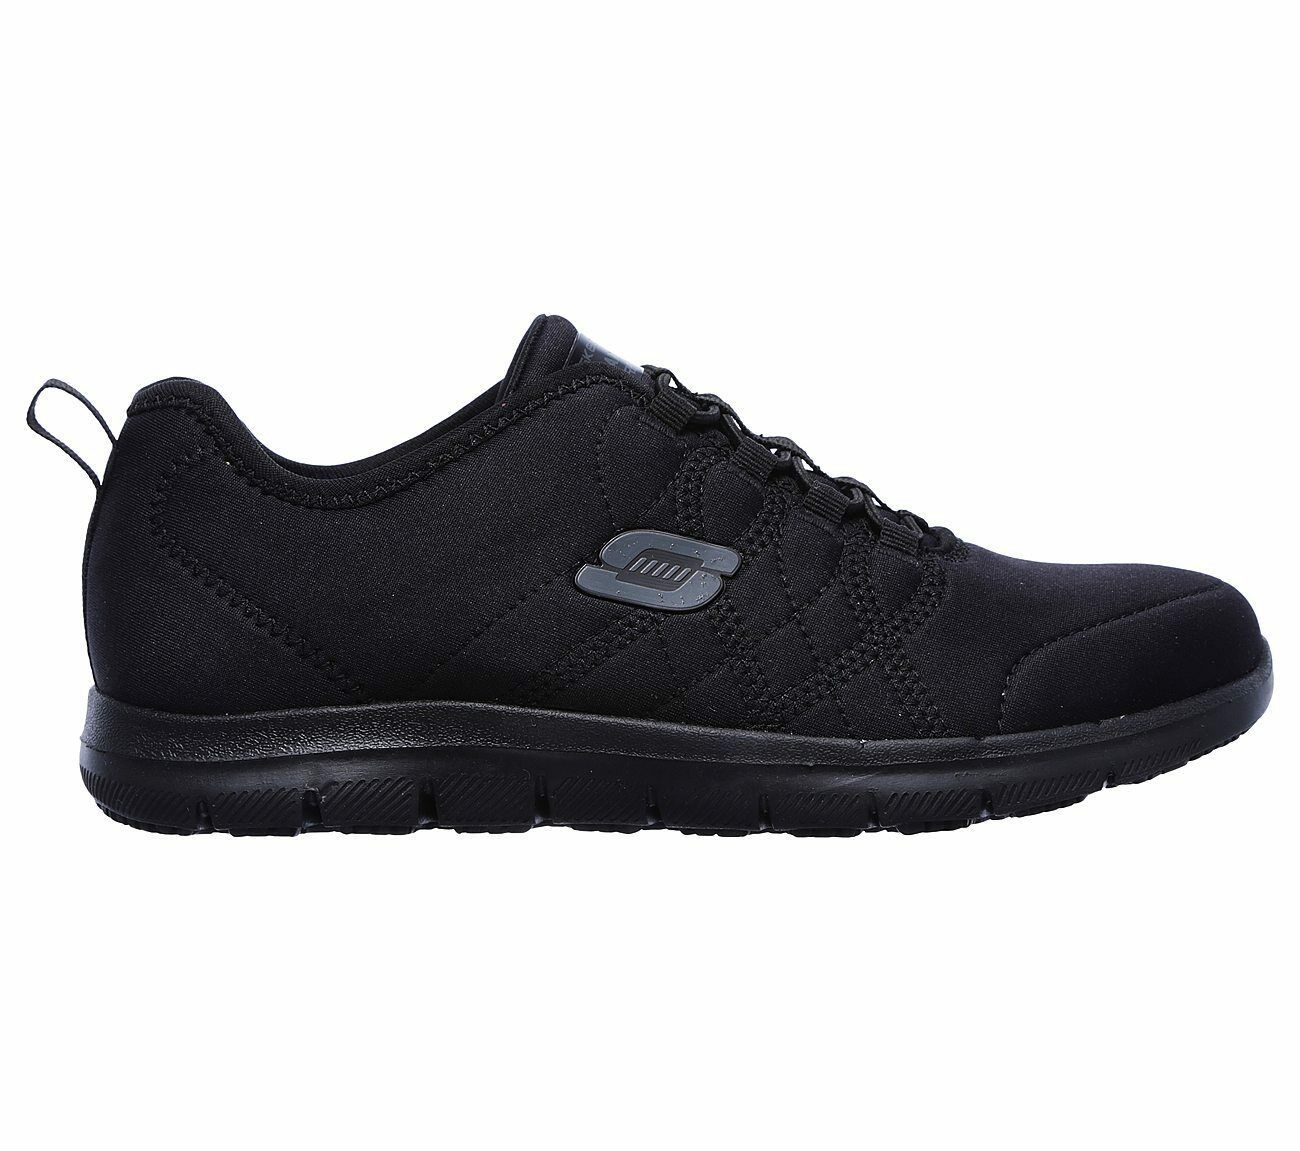 77211 W Wide Fit Black Skechers shoes Women Memory Foam Work Slip Resistant Sole - Occupational